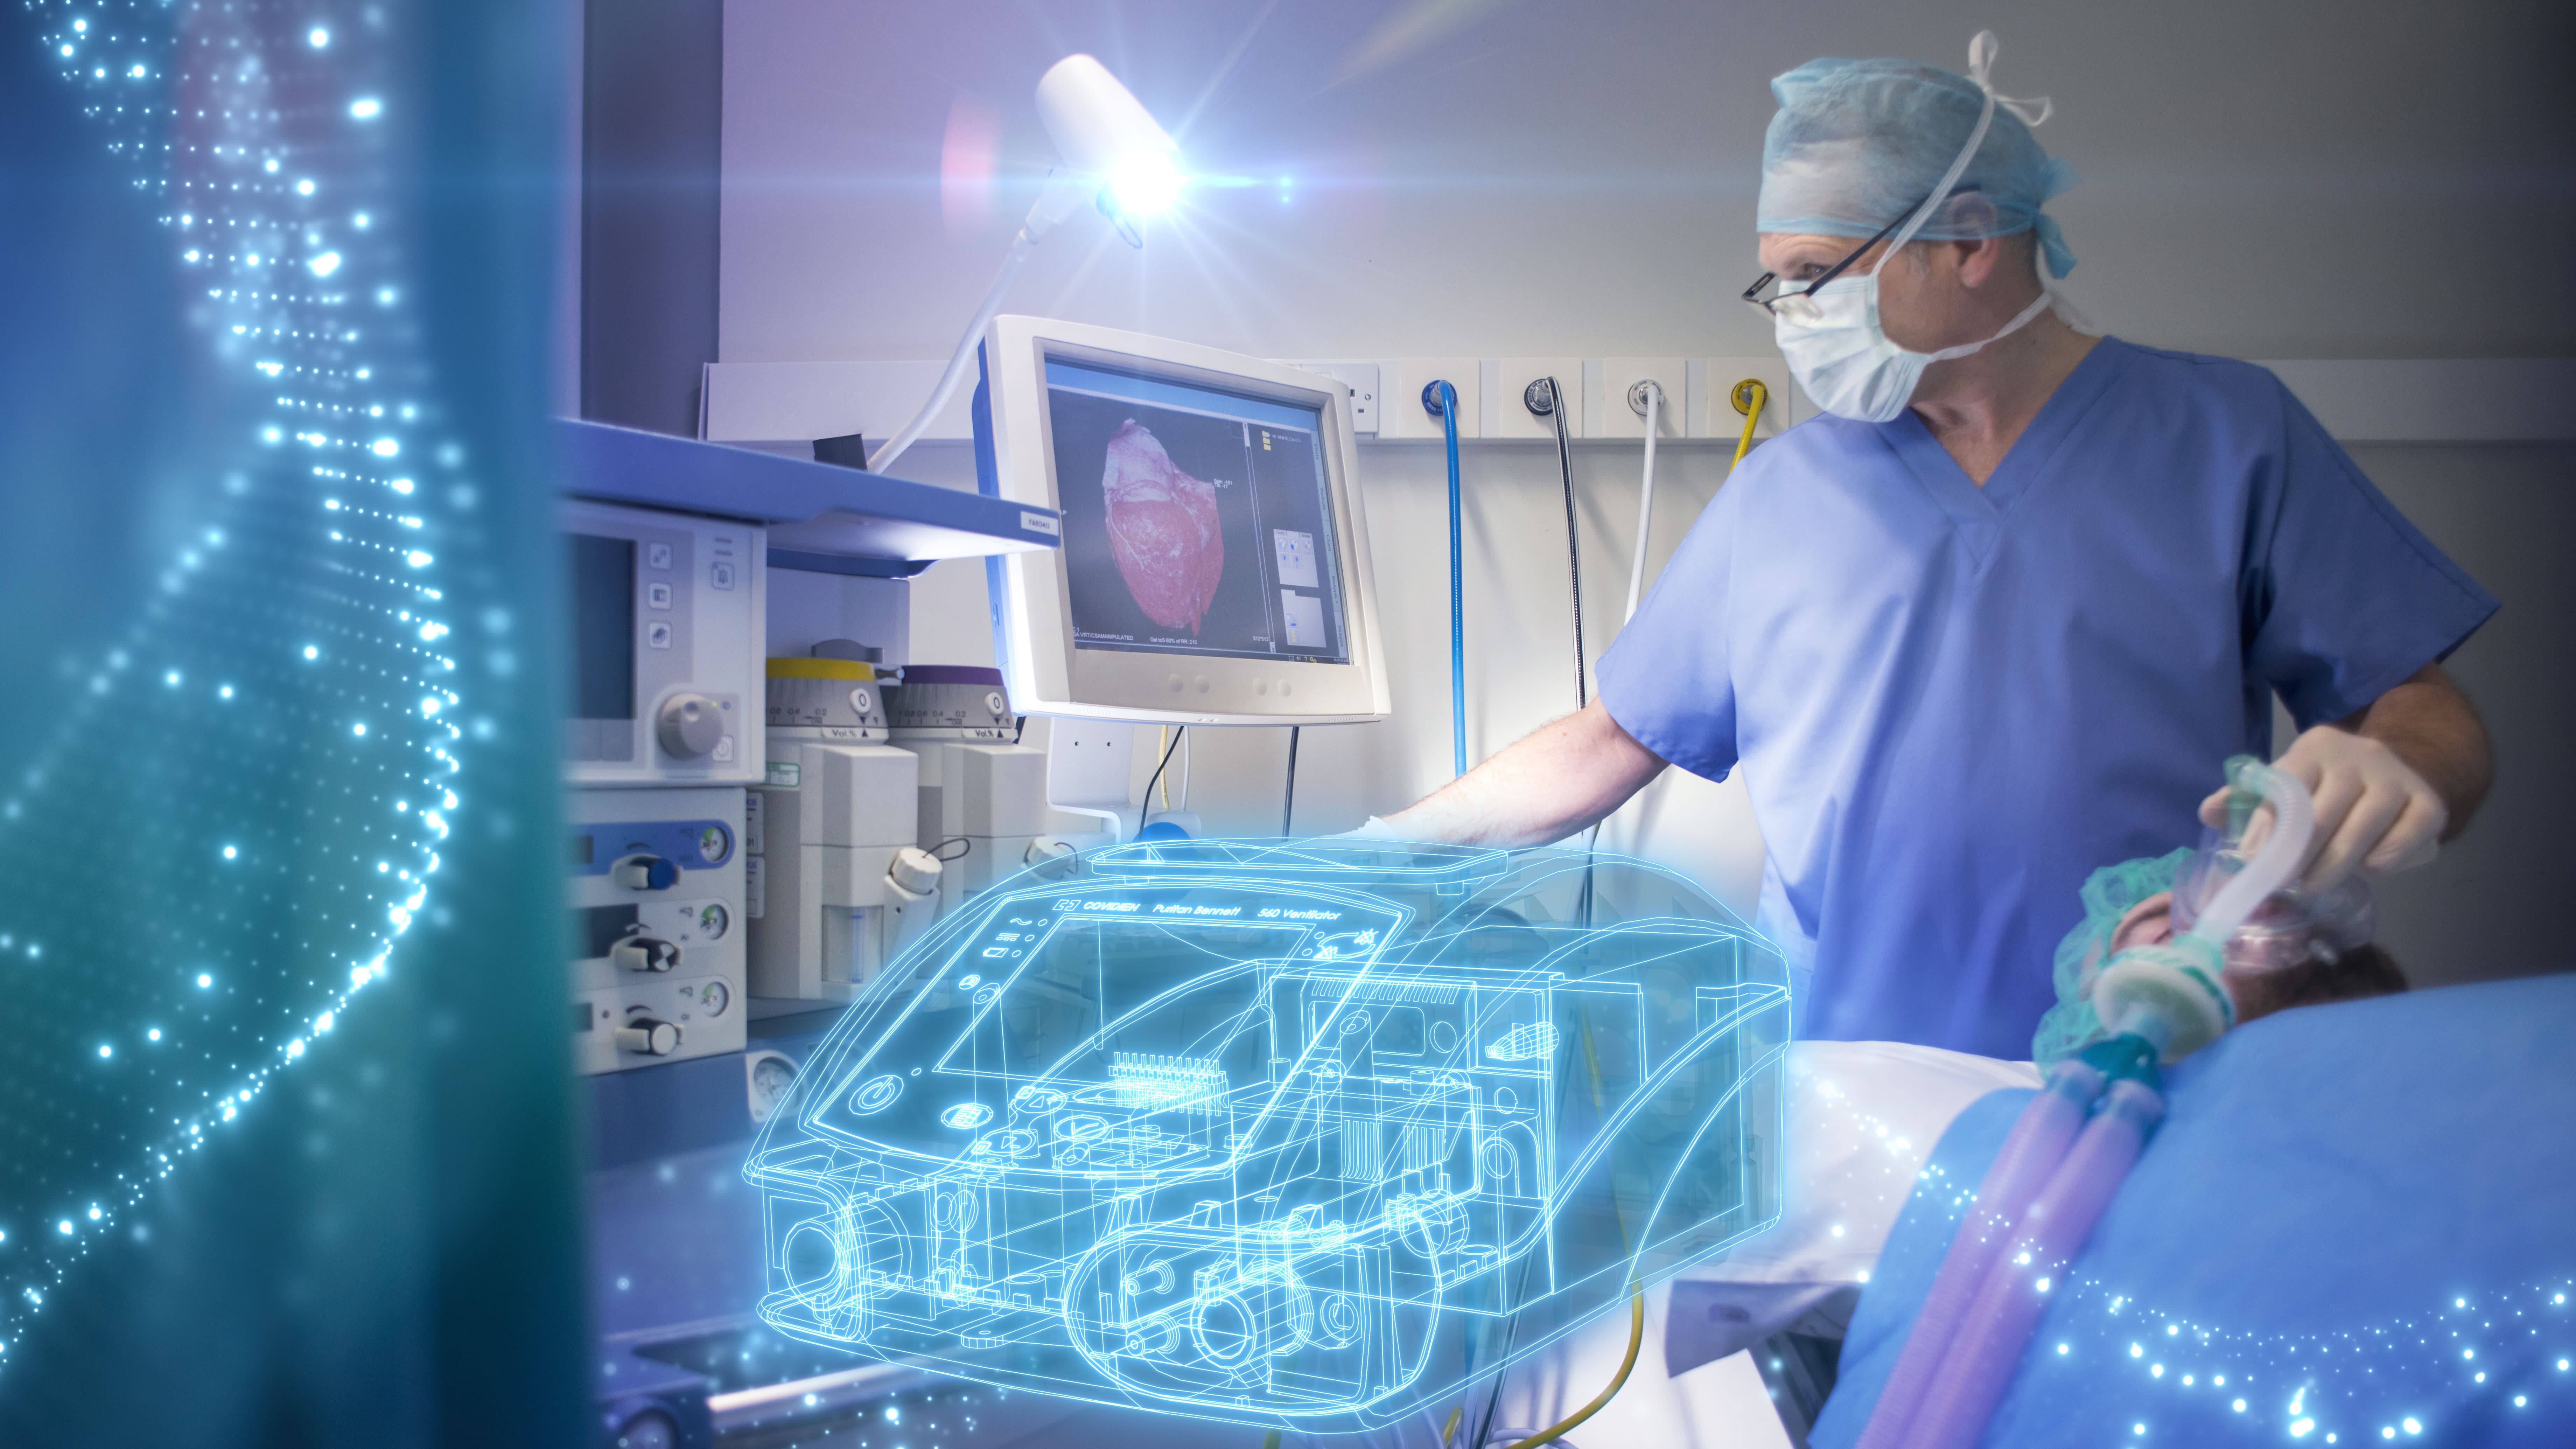 Beschleunigtes Wachstum für junge Medizintechnikunternehmen mit Siemens Digital Industries Software